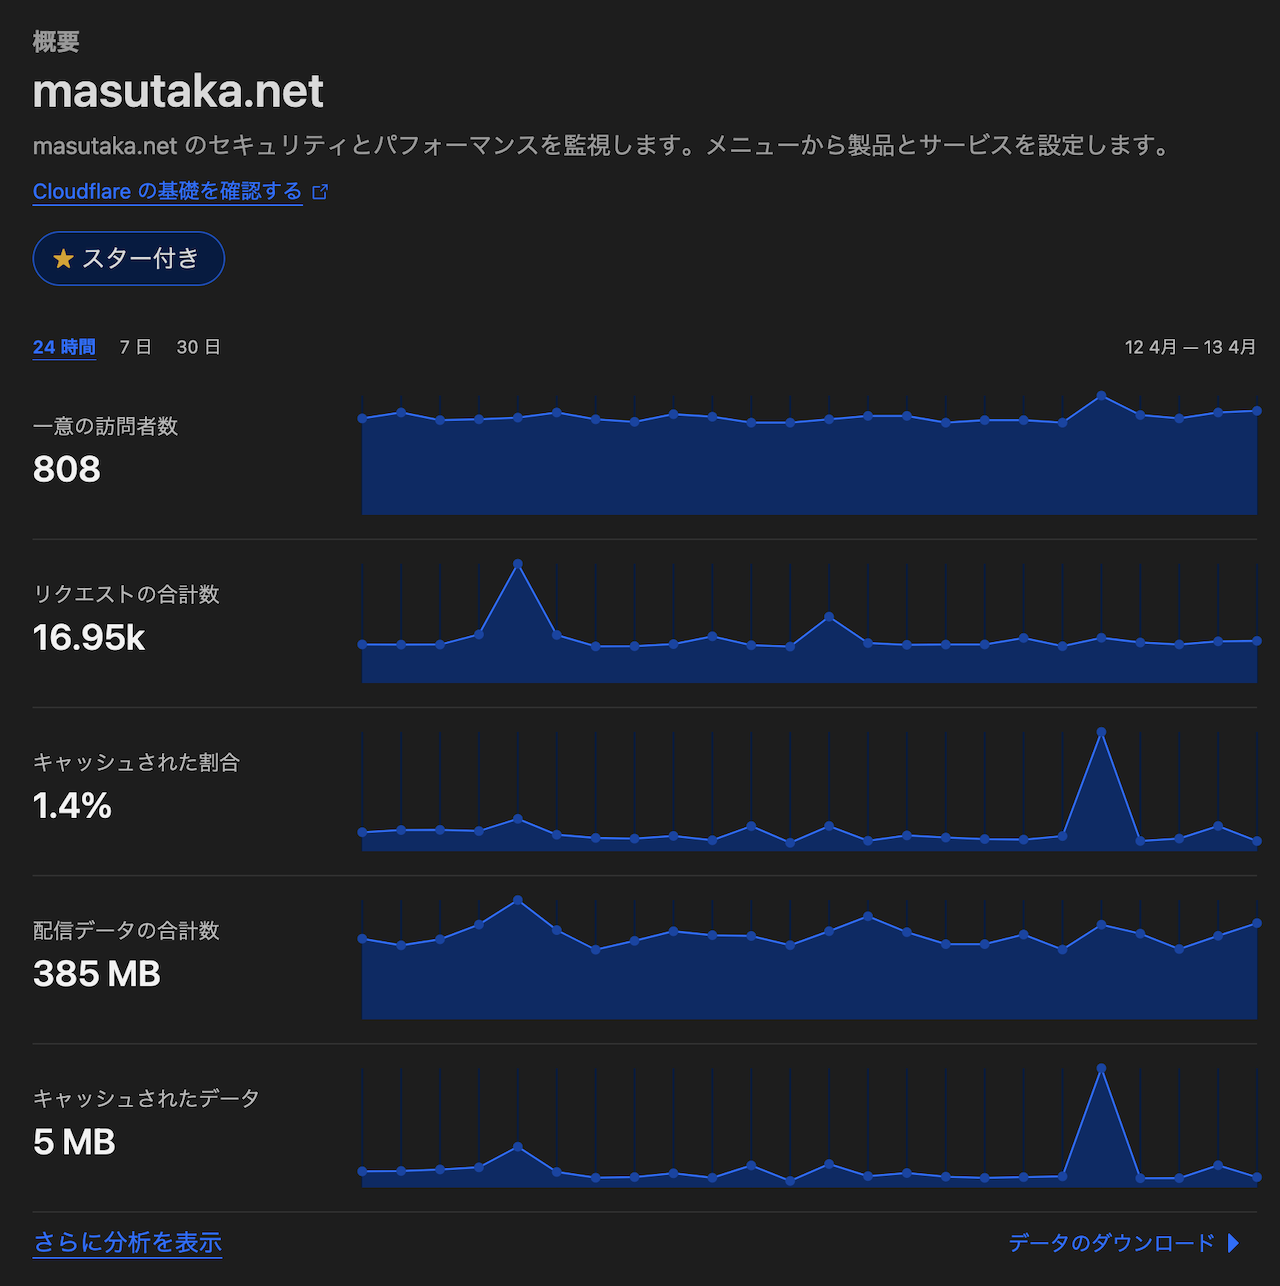 Cloudflare 上で確認できる masutaka.net のメトリックス